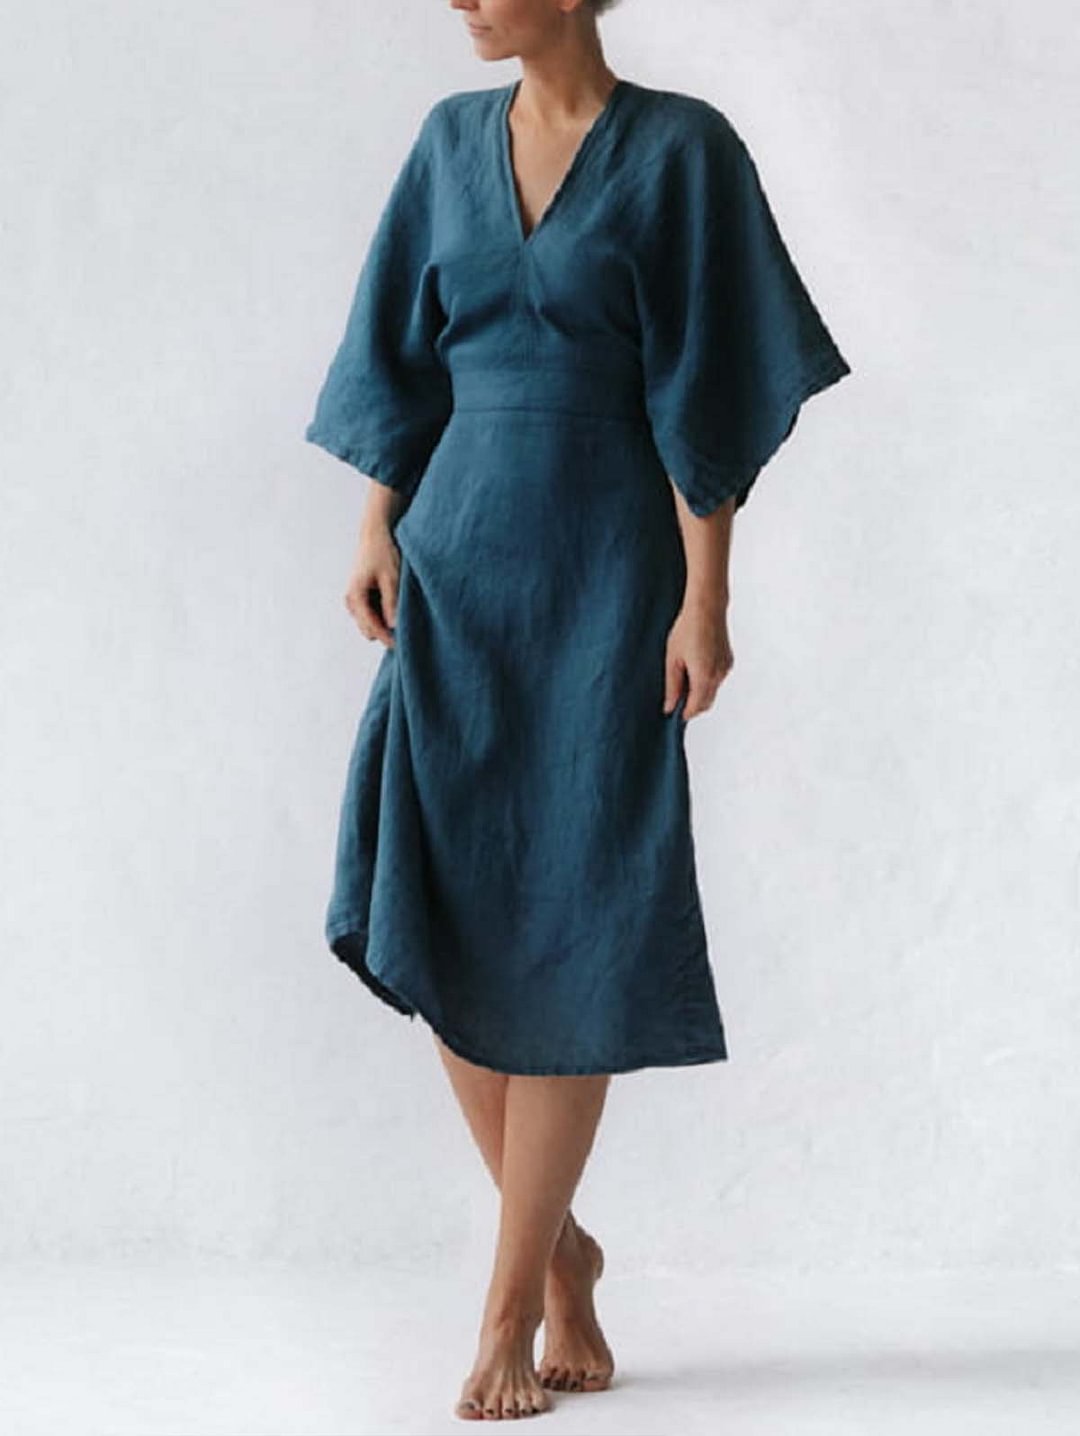 Elegant Ink Blue Linen Dress